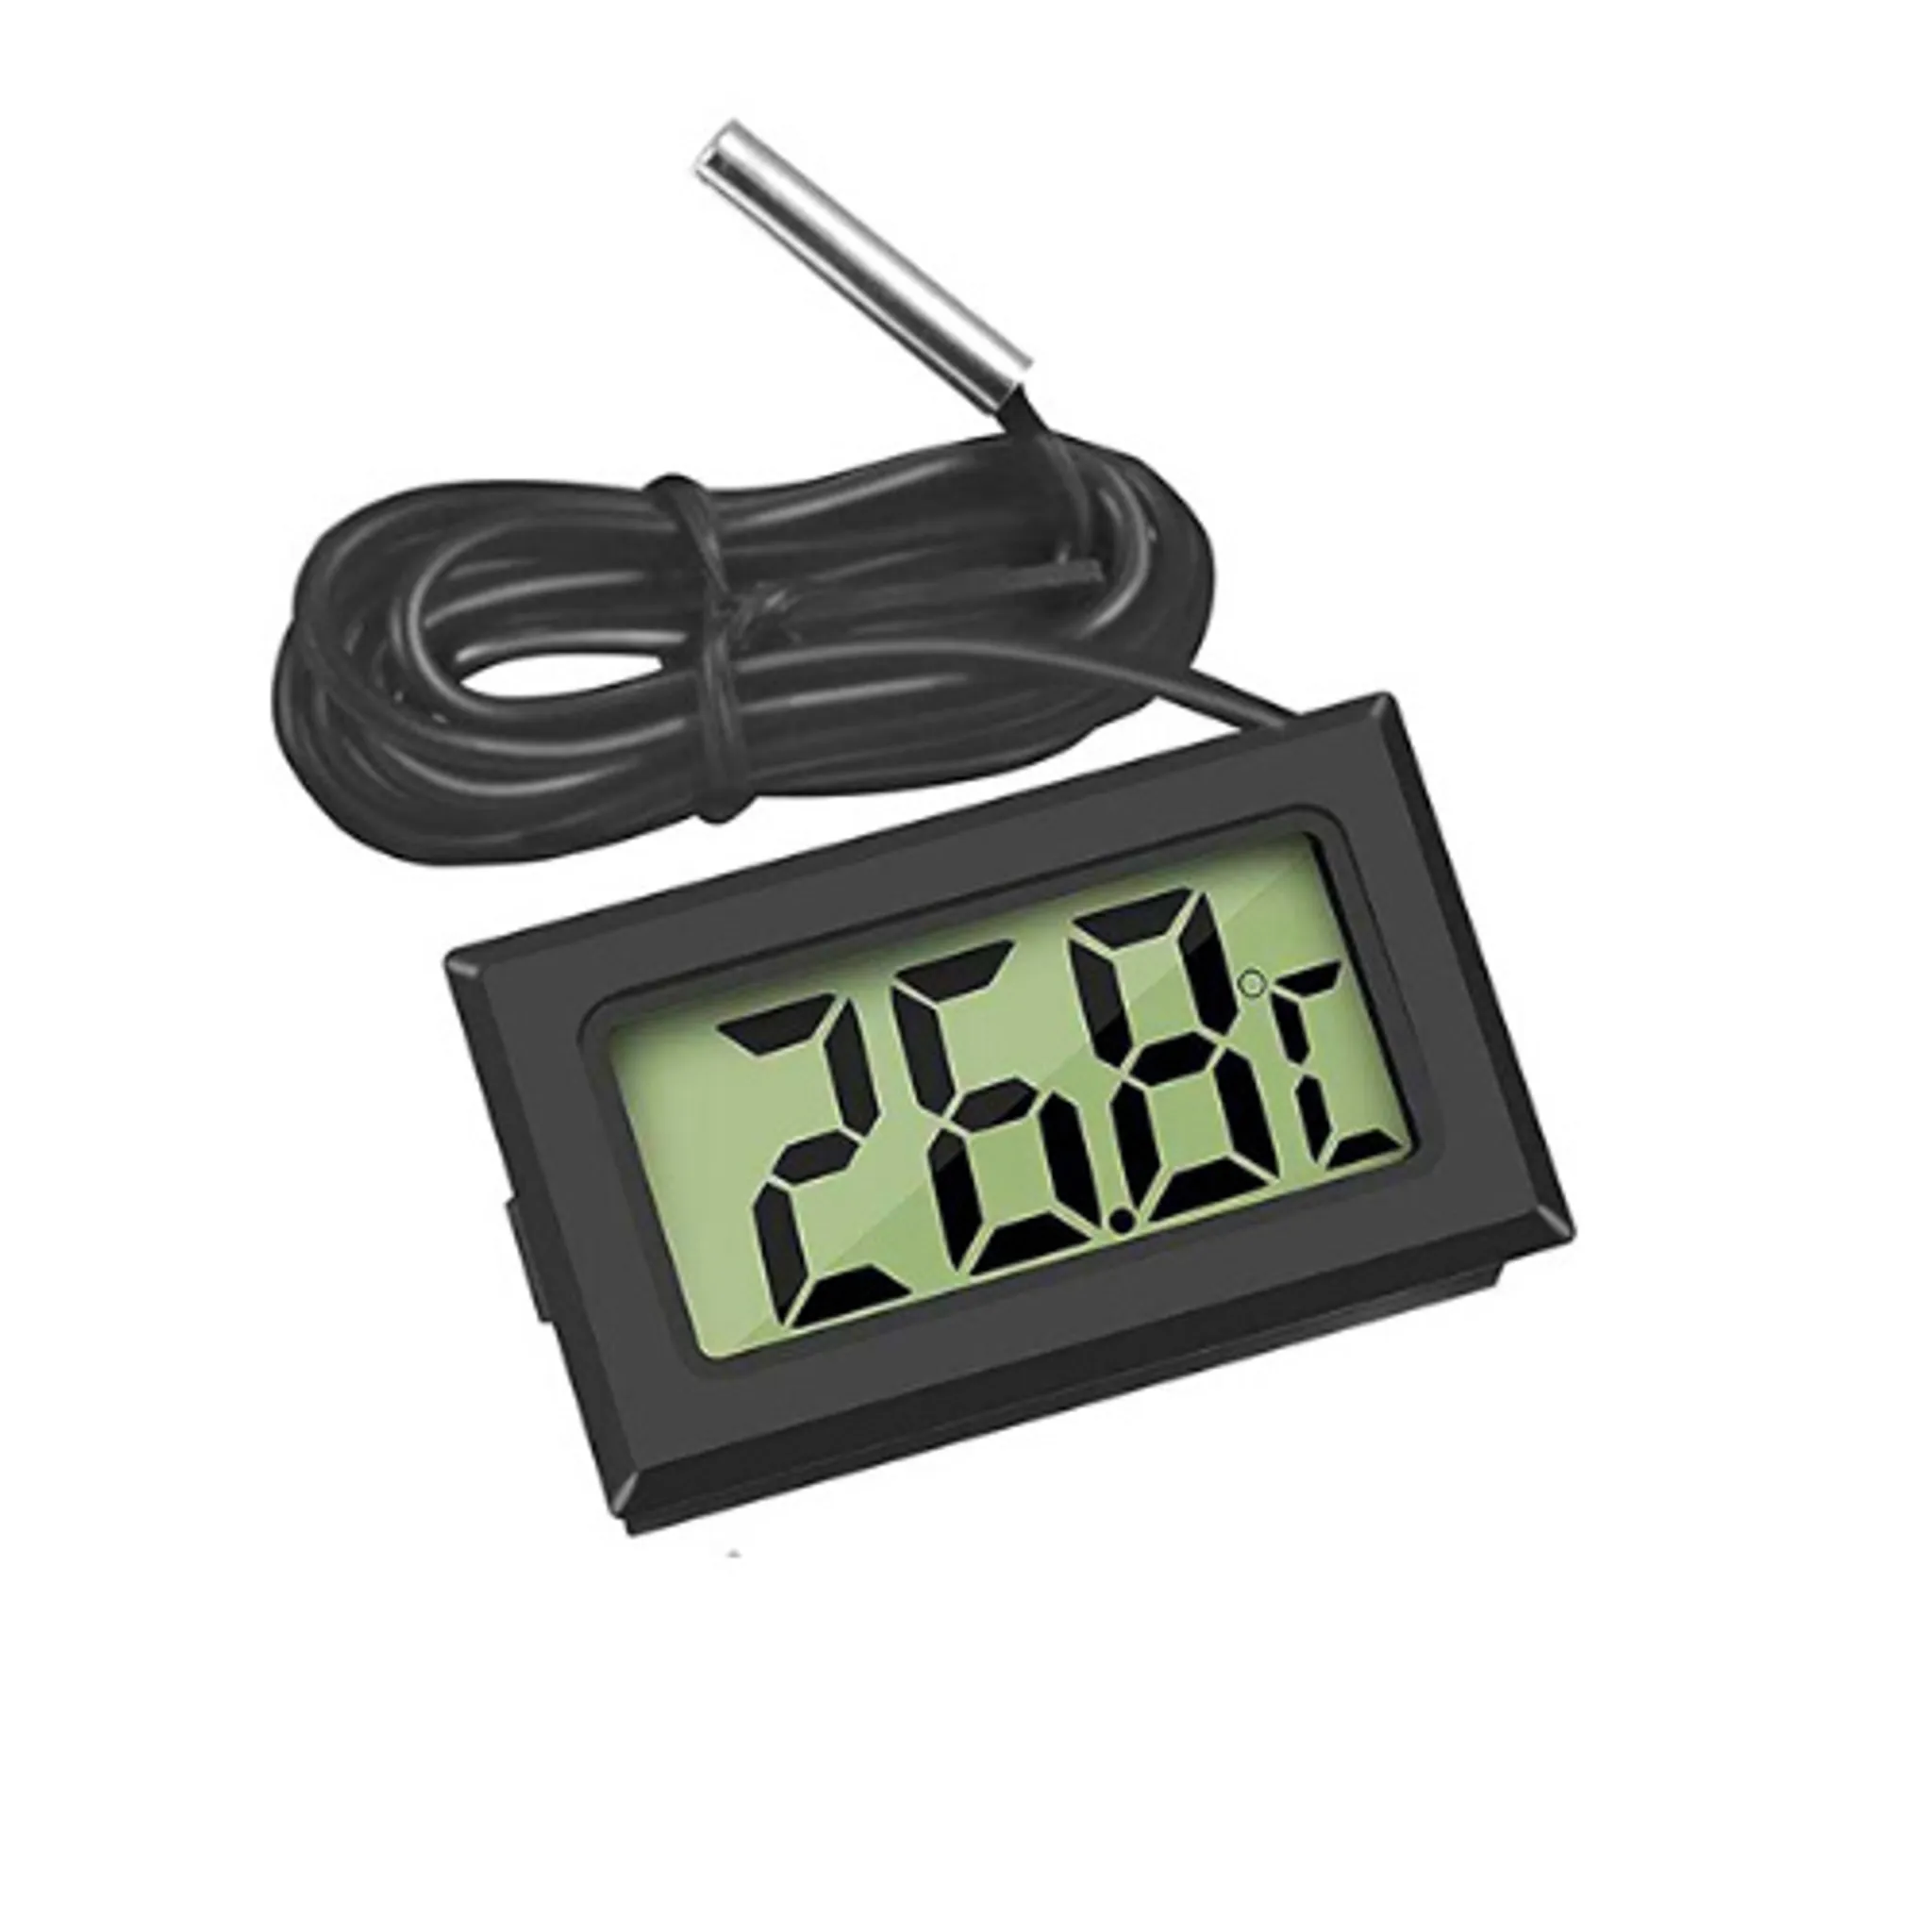 Auto Digitaluhr Temperaturanzeige Elektronische Uhr Thermometer Auto  Elektronische Uhr